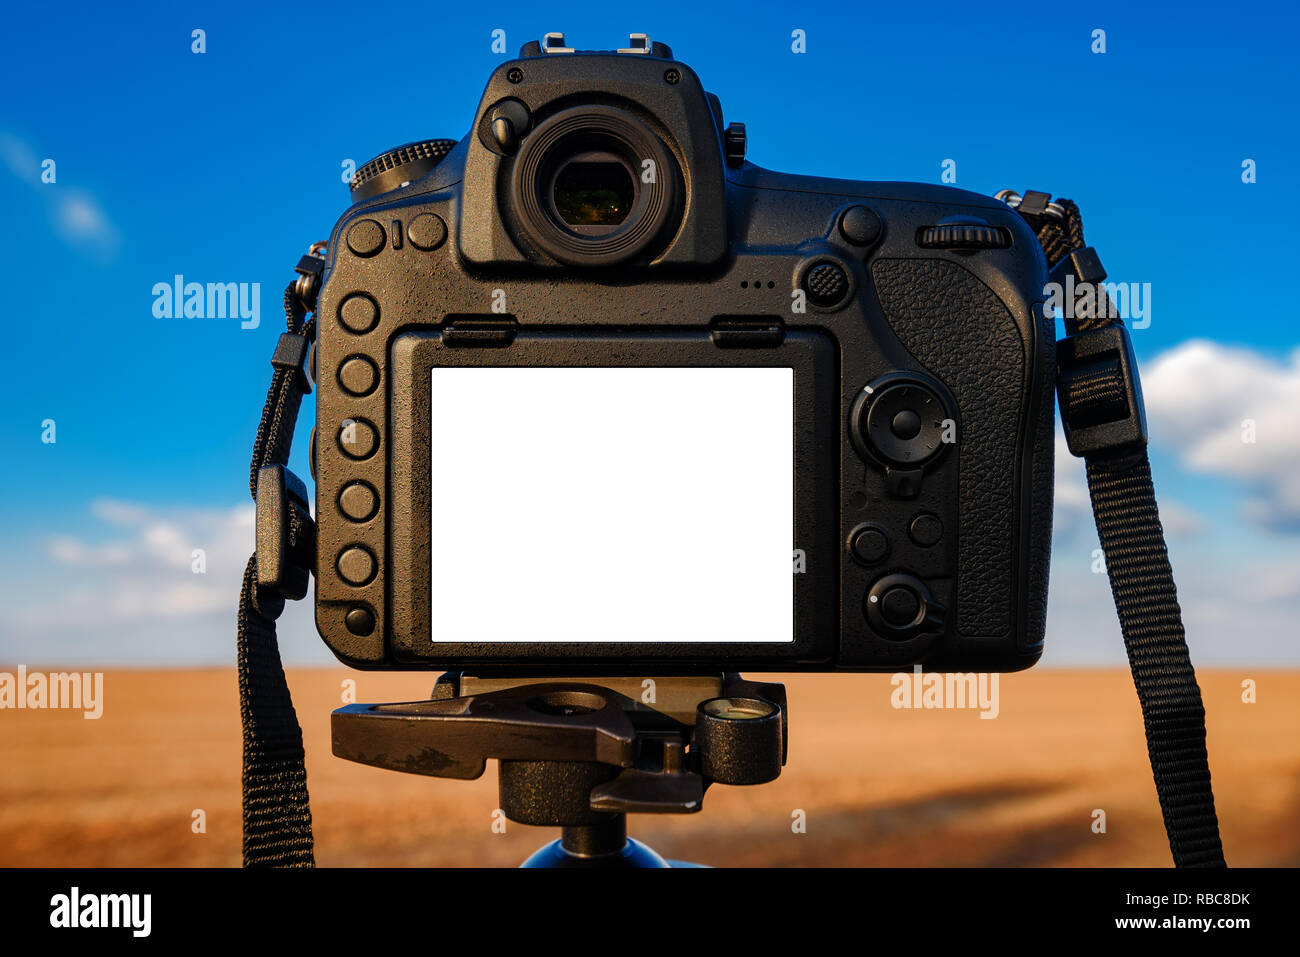 Fotocamera reflex digitale mock up schermo per esterni di fotografia paesaggistica immagine Foto Stock